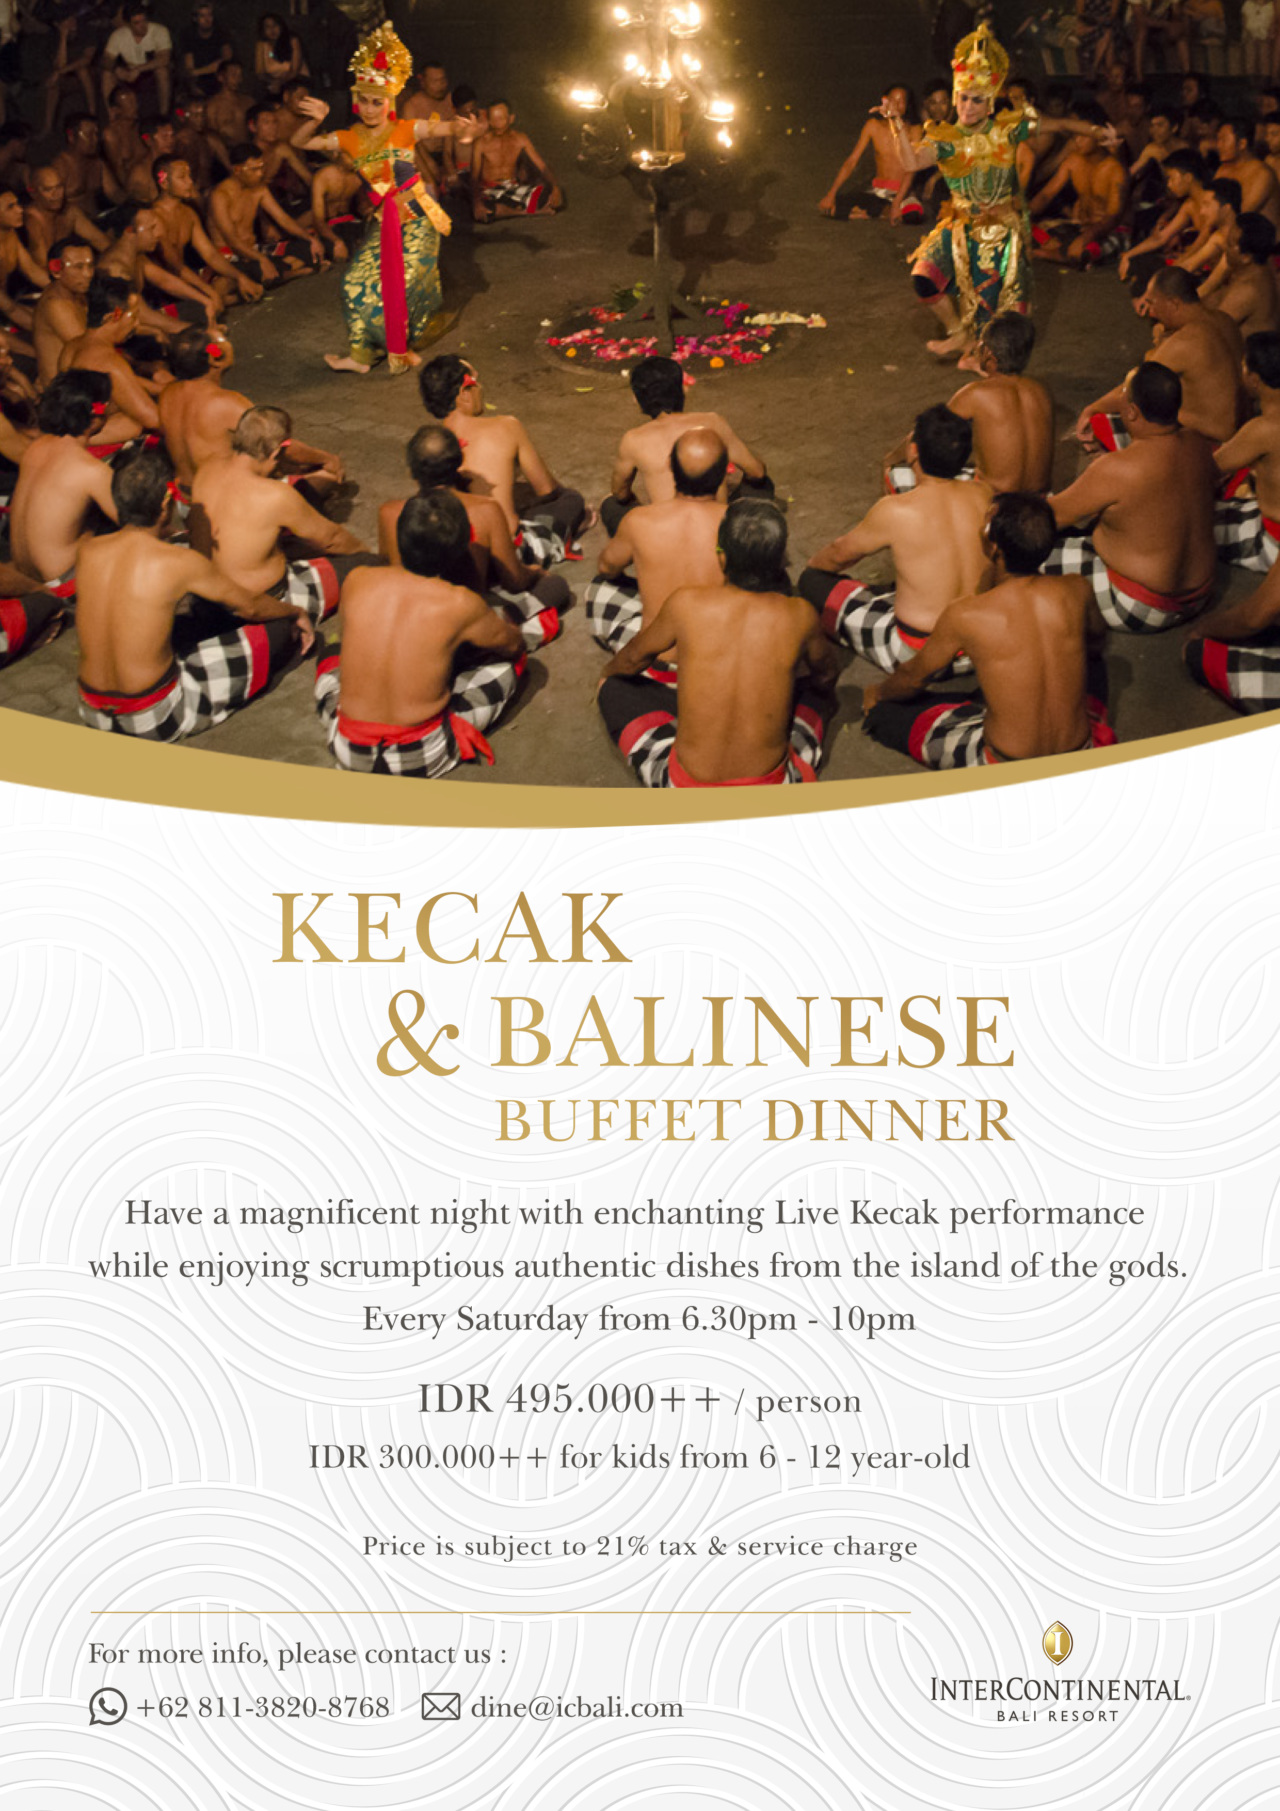 Kecak-_-Balinese-Buffet-Dinner-1280x1811.jpg